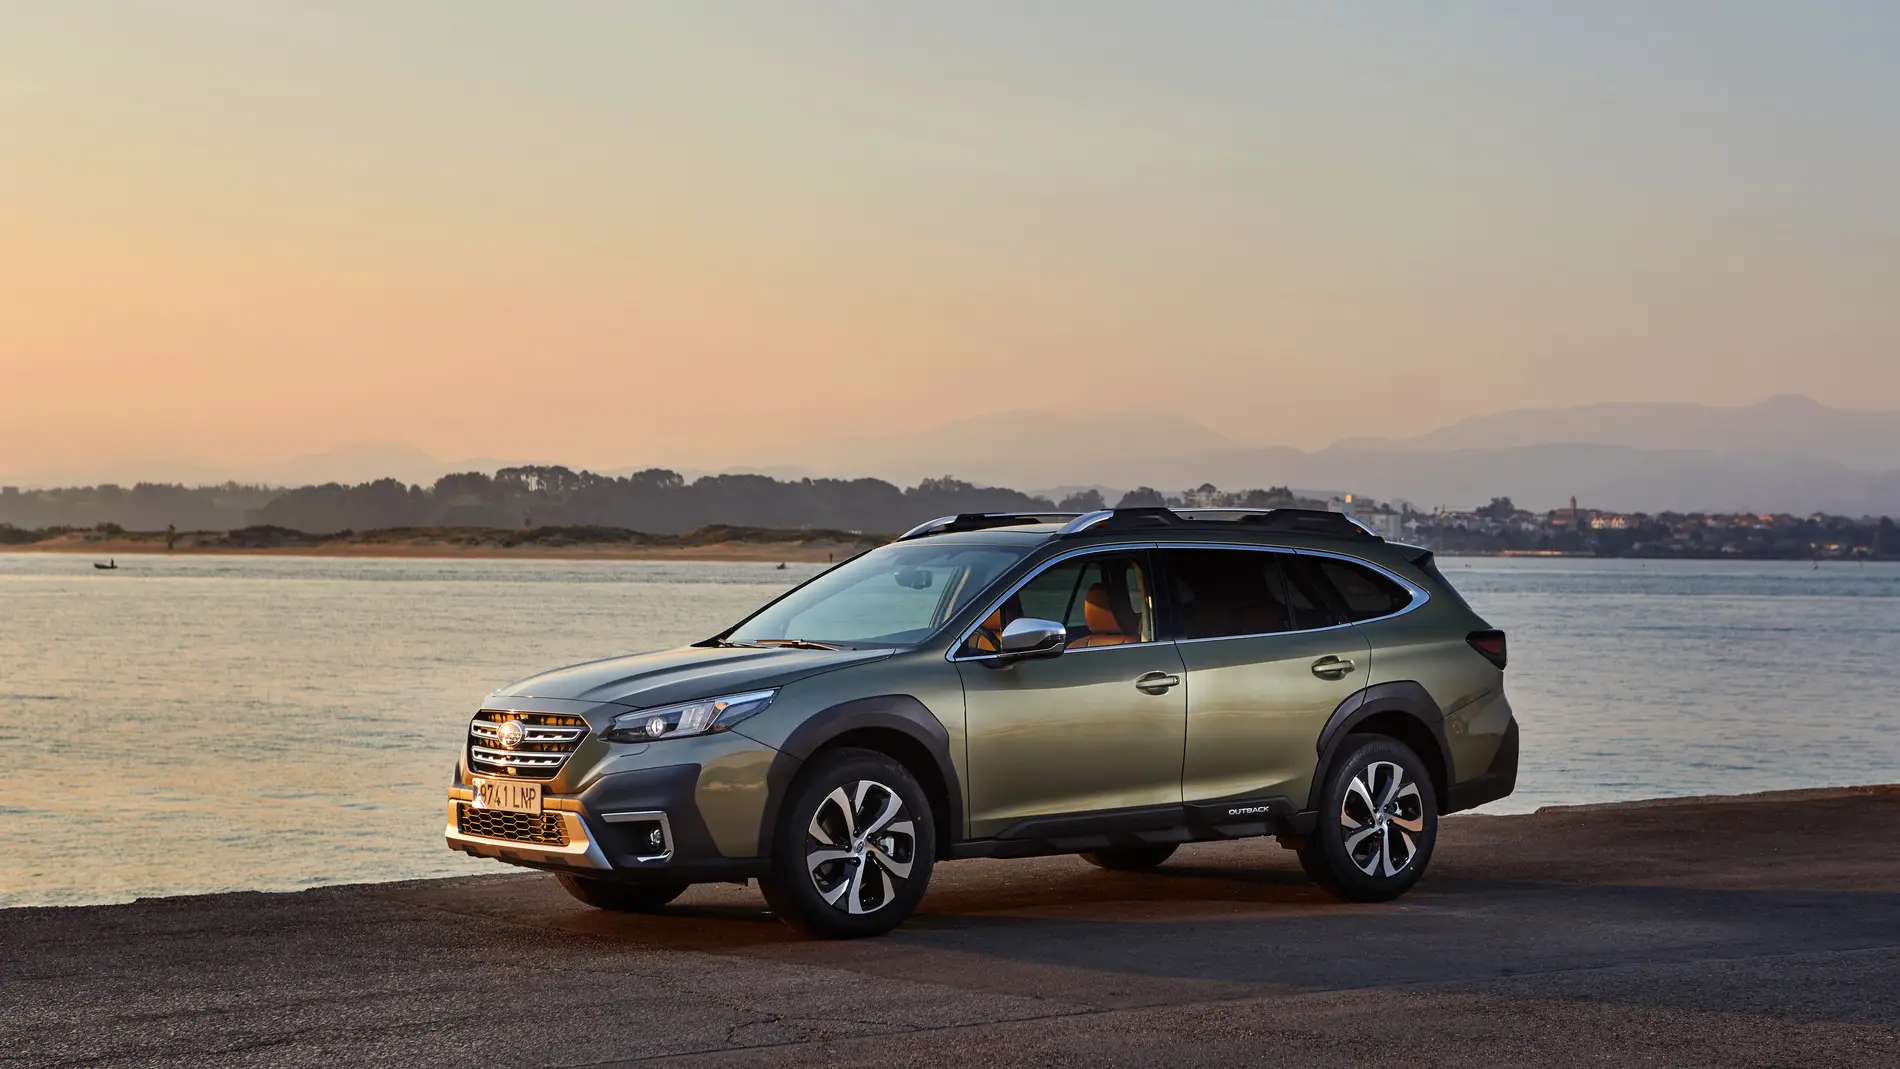 El Subaru outback obtiene la máxima puntuación en seguridad